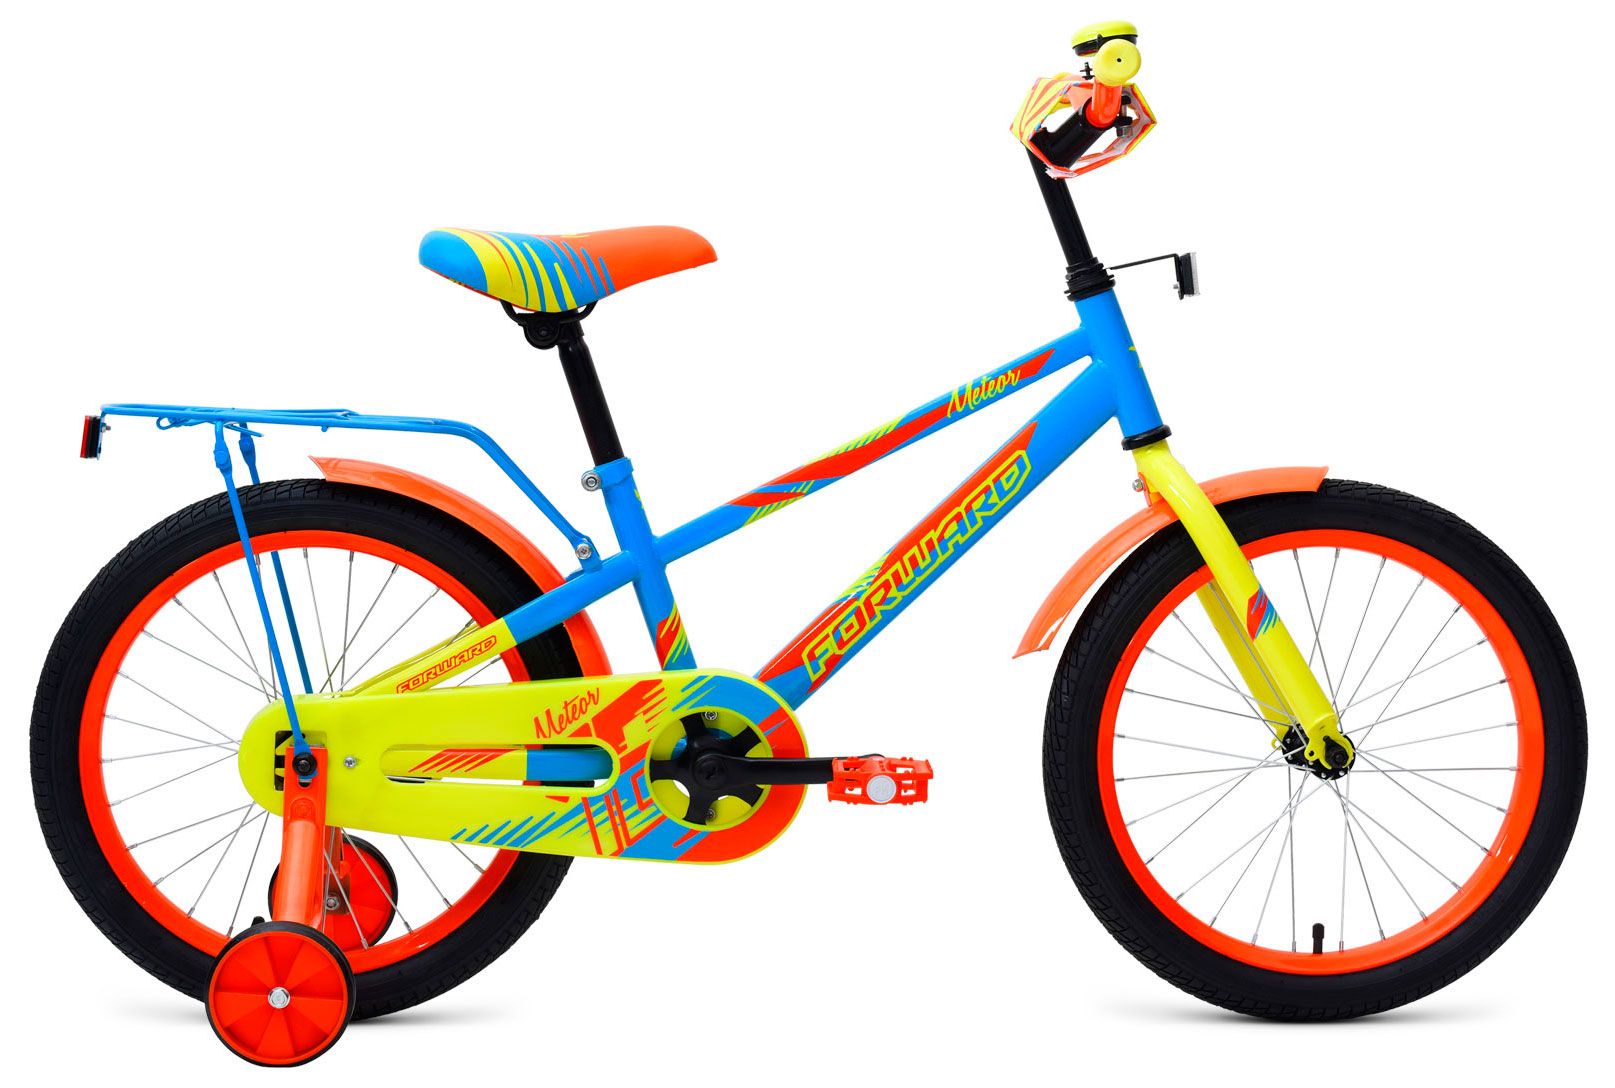  Отзывы о Трехколесный детский велосипед Forward Meteor 18 2018